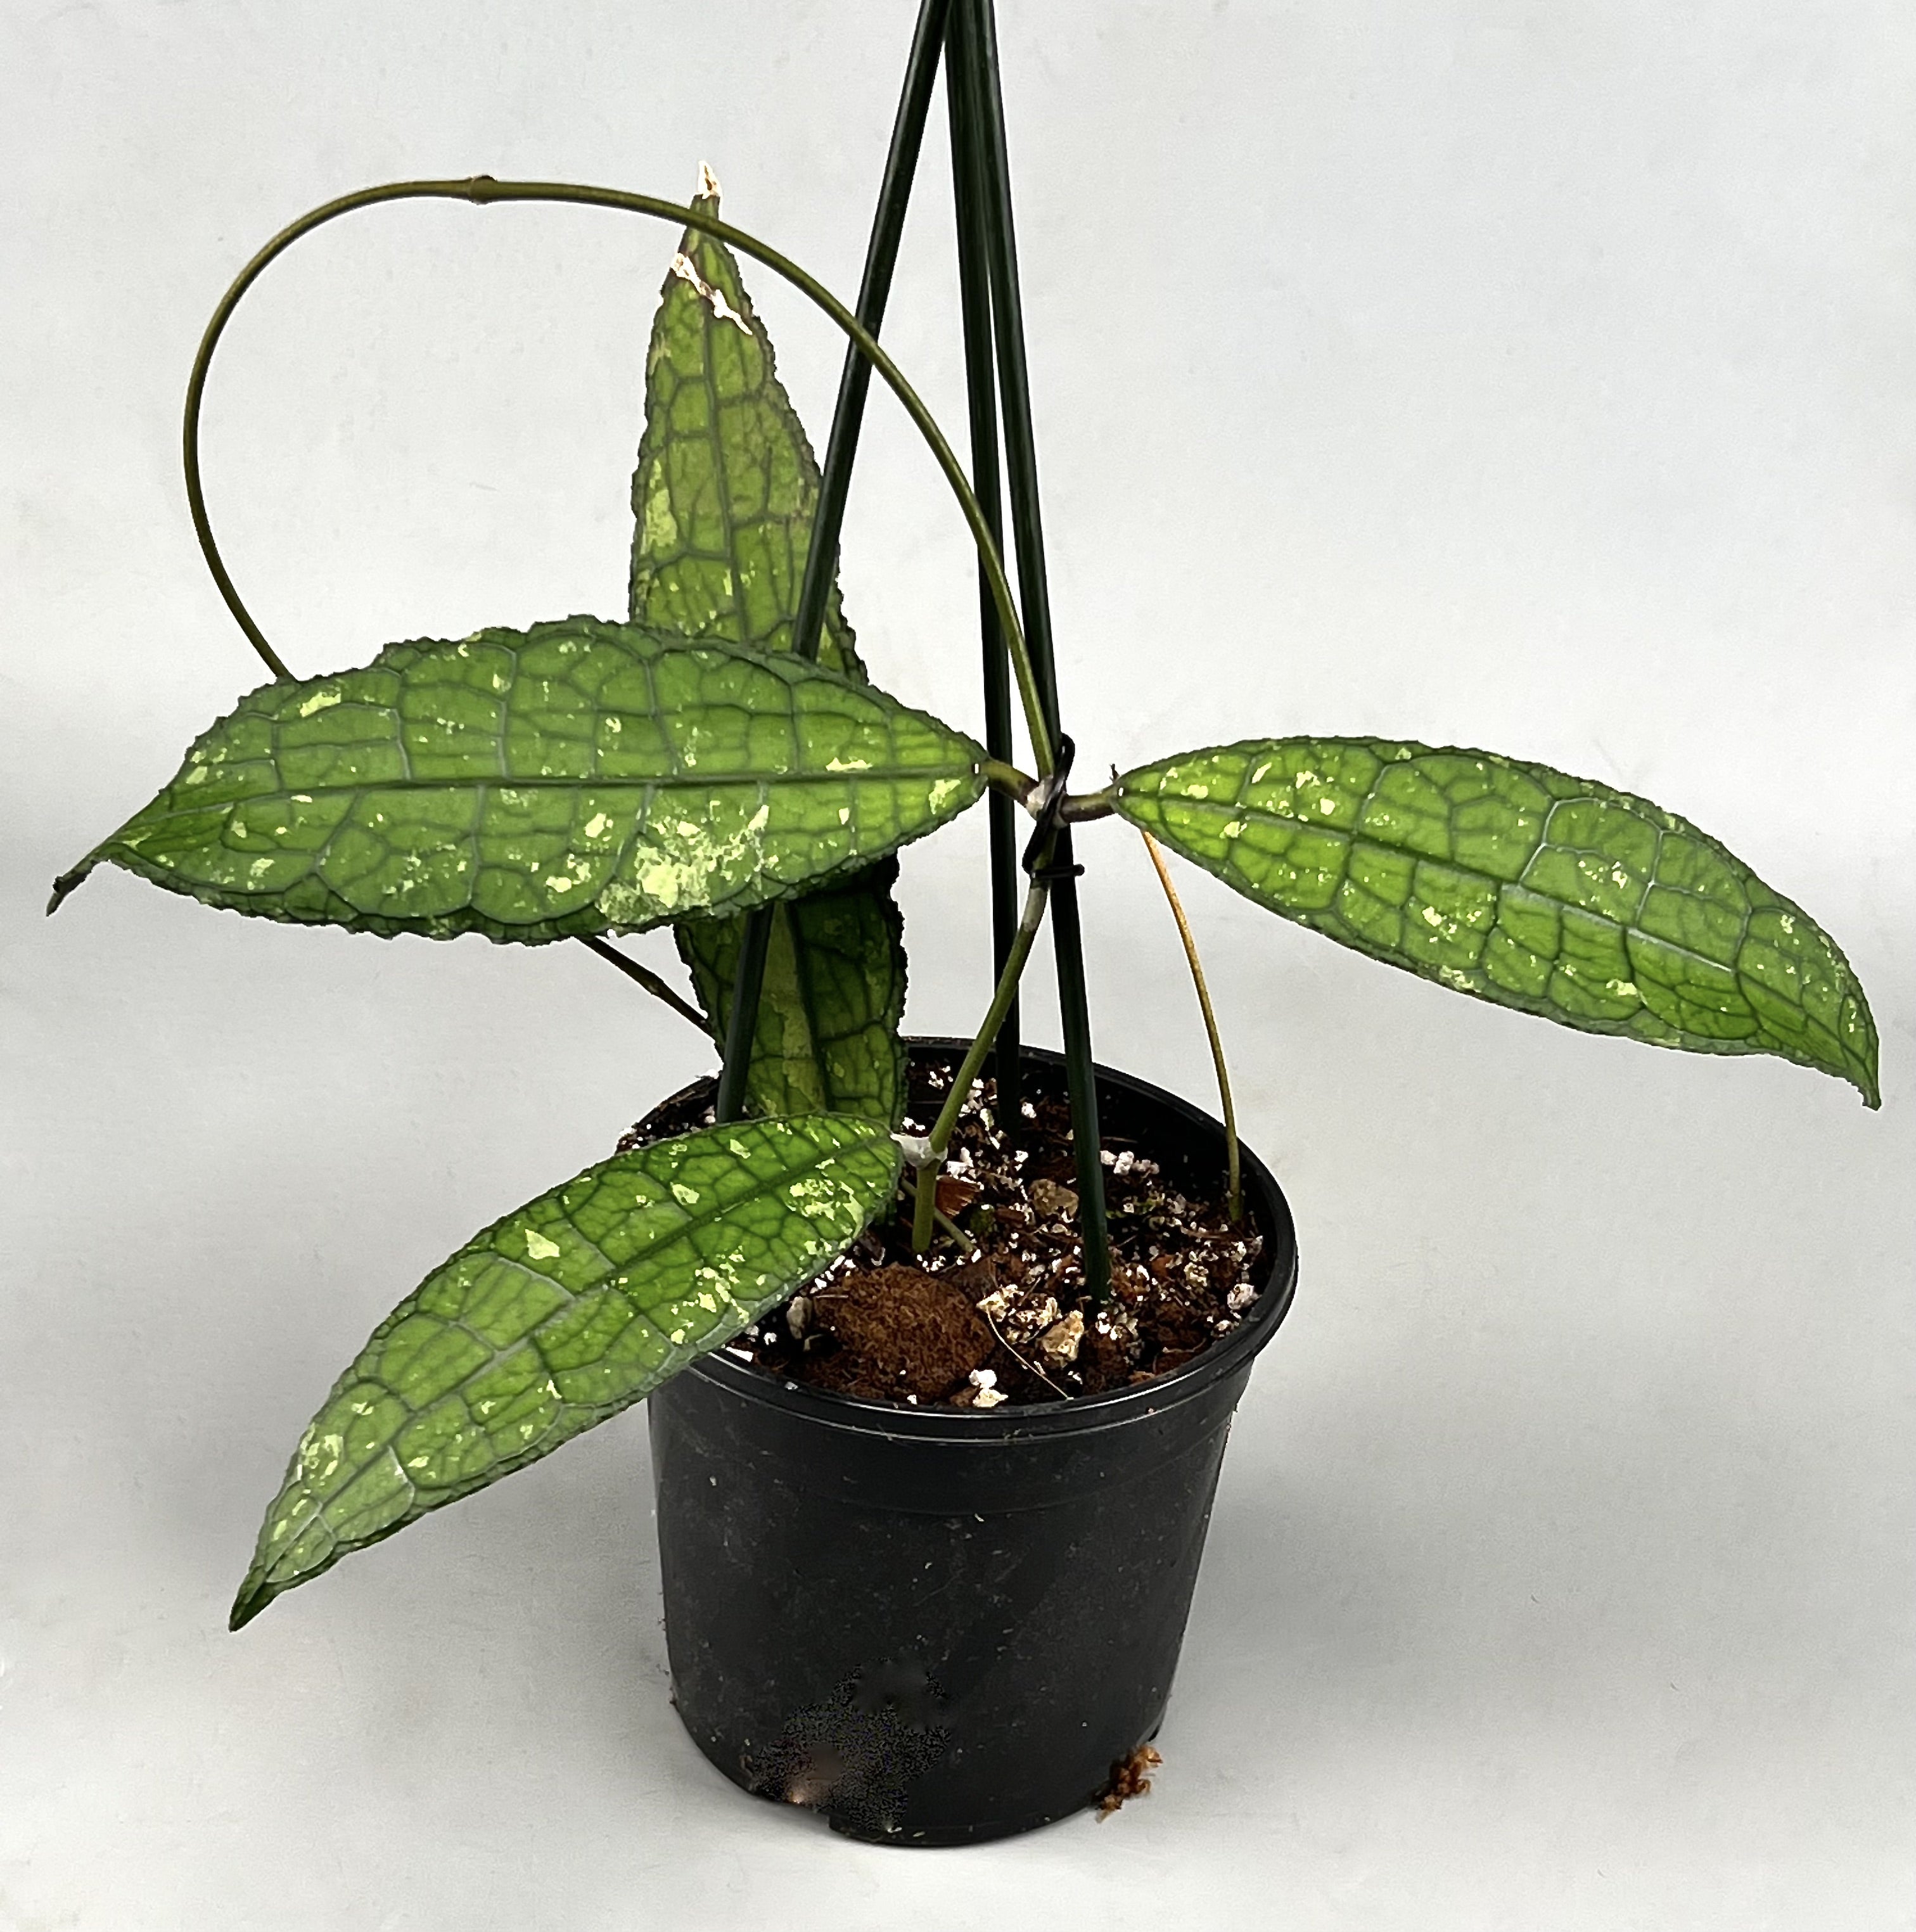 Hoya clemensiorum (2 Leaves)